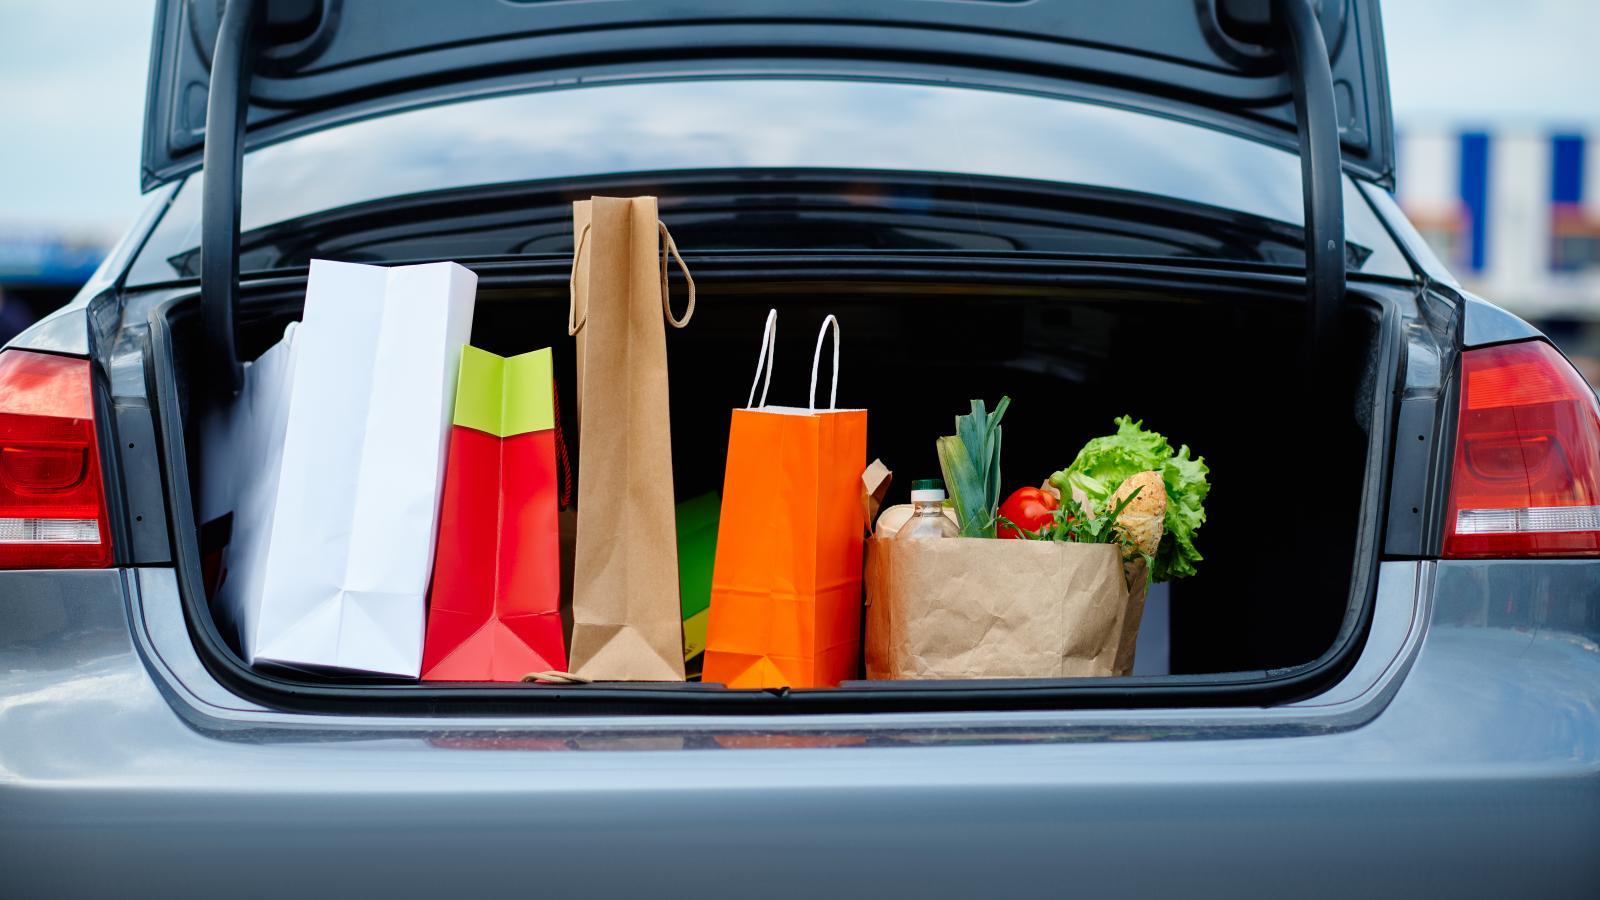 Μεταφέρεις ψώνια από το σουπερμάρκετ με το αυτοκίνητο; Αυτό είναι το πρόστιμο που σε περιμένει